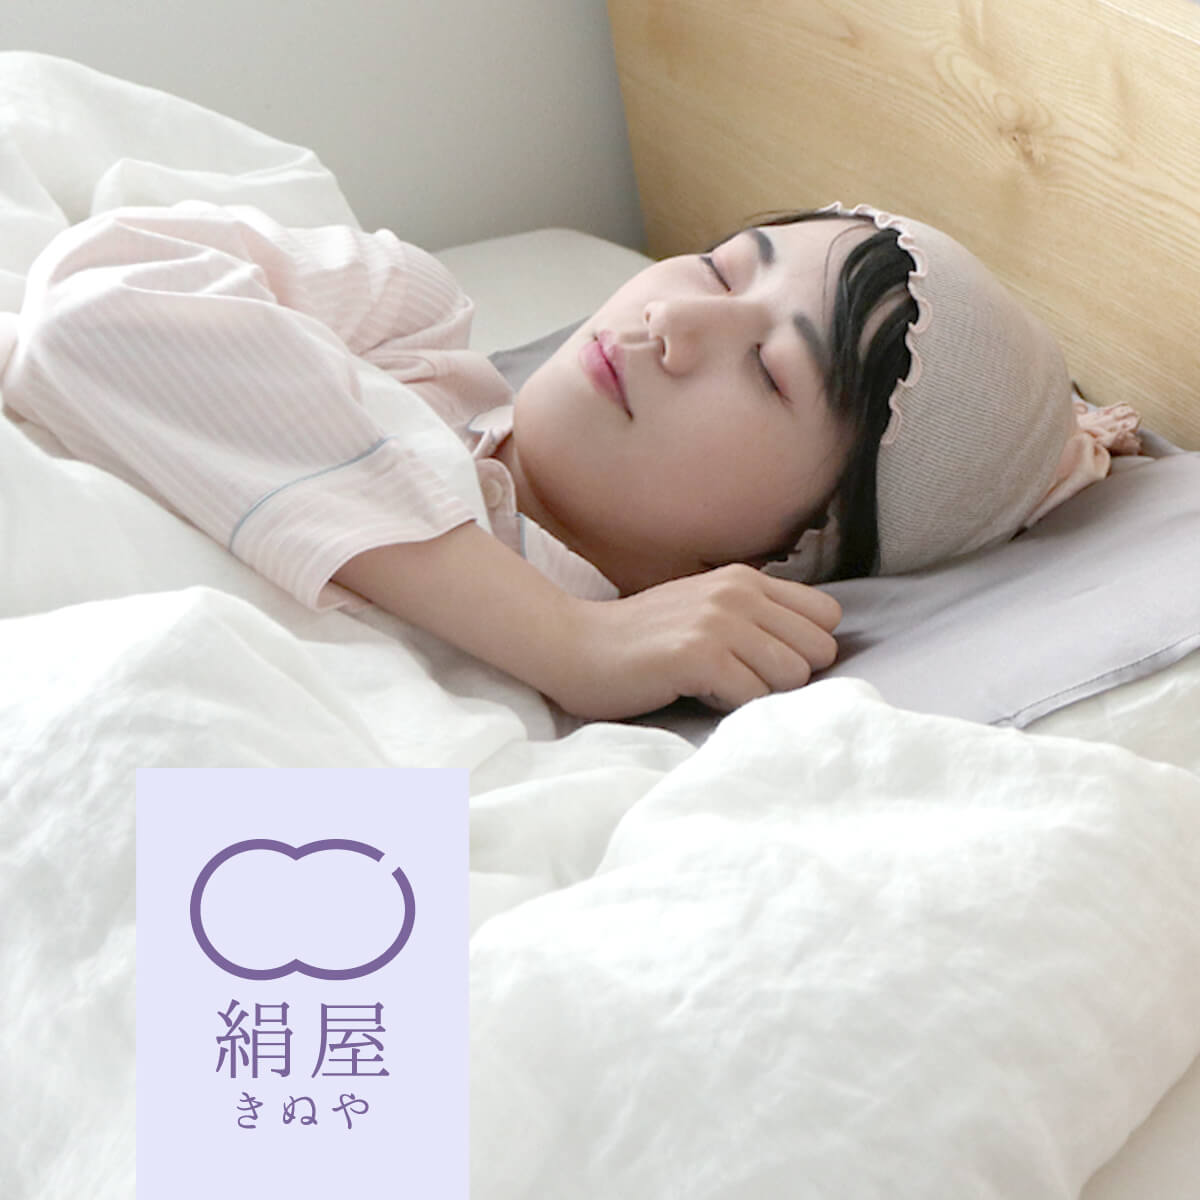 絹屋 シルク ナイトキャップ ふわふわタイプ シルクキャップ シルク100 ロング ロングヘア レディース 女性用 睡眠 就寝用 日本製